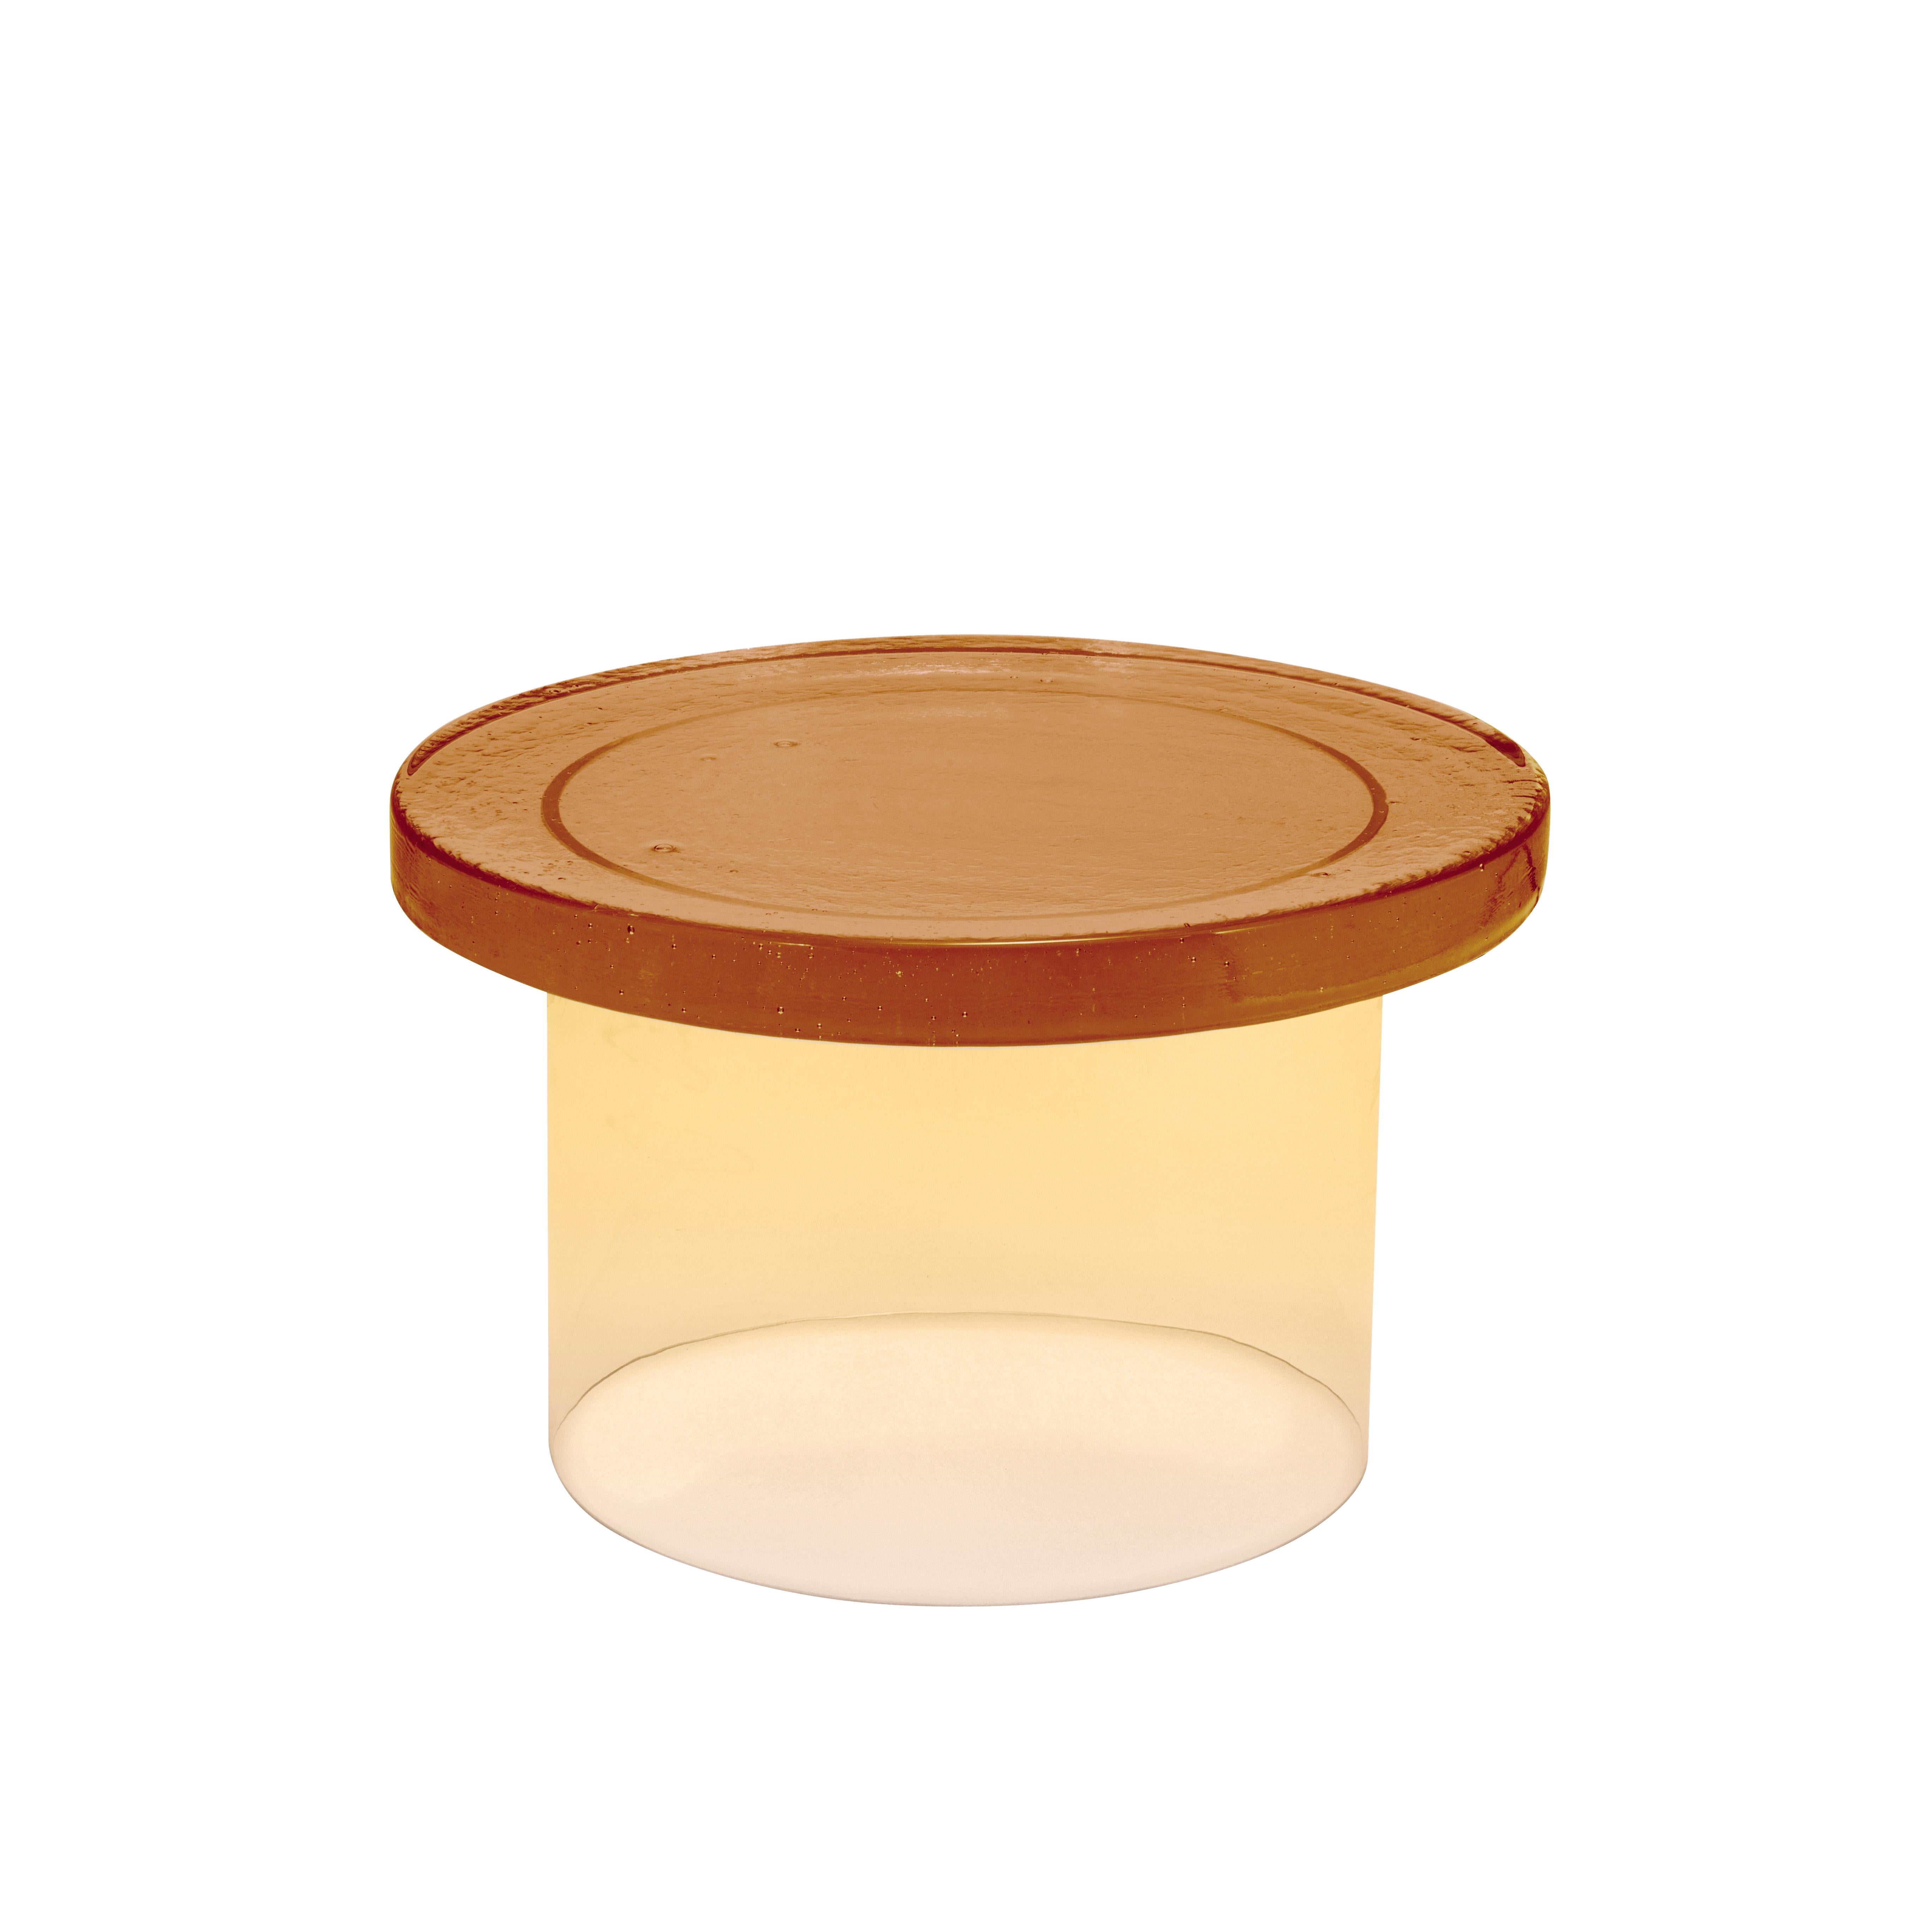 Table basse trois grands ambre Bigli par Pulpo
Dimensions : D56 x H35 cm
MATERIAL : Verre moulé et soufflé à la main

Disponible également en différentes couleurs.

Normalement, le verre est considéré comme un matériau léger aux arêtes vives.